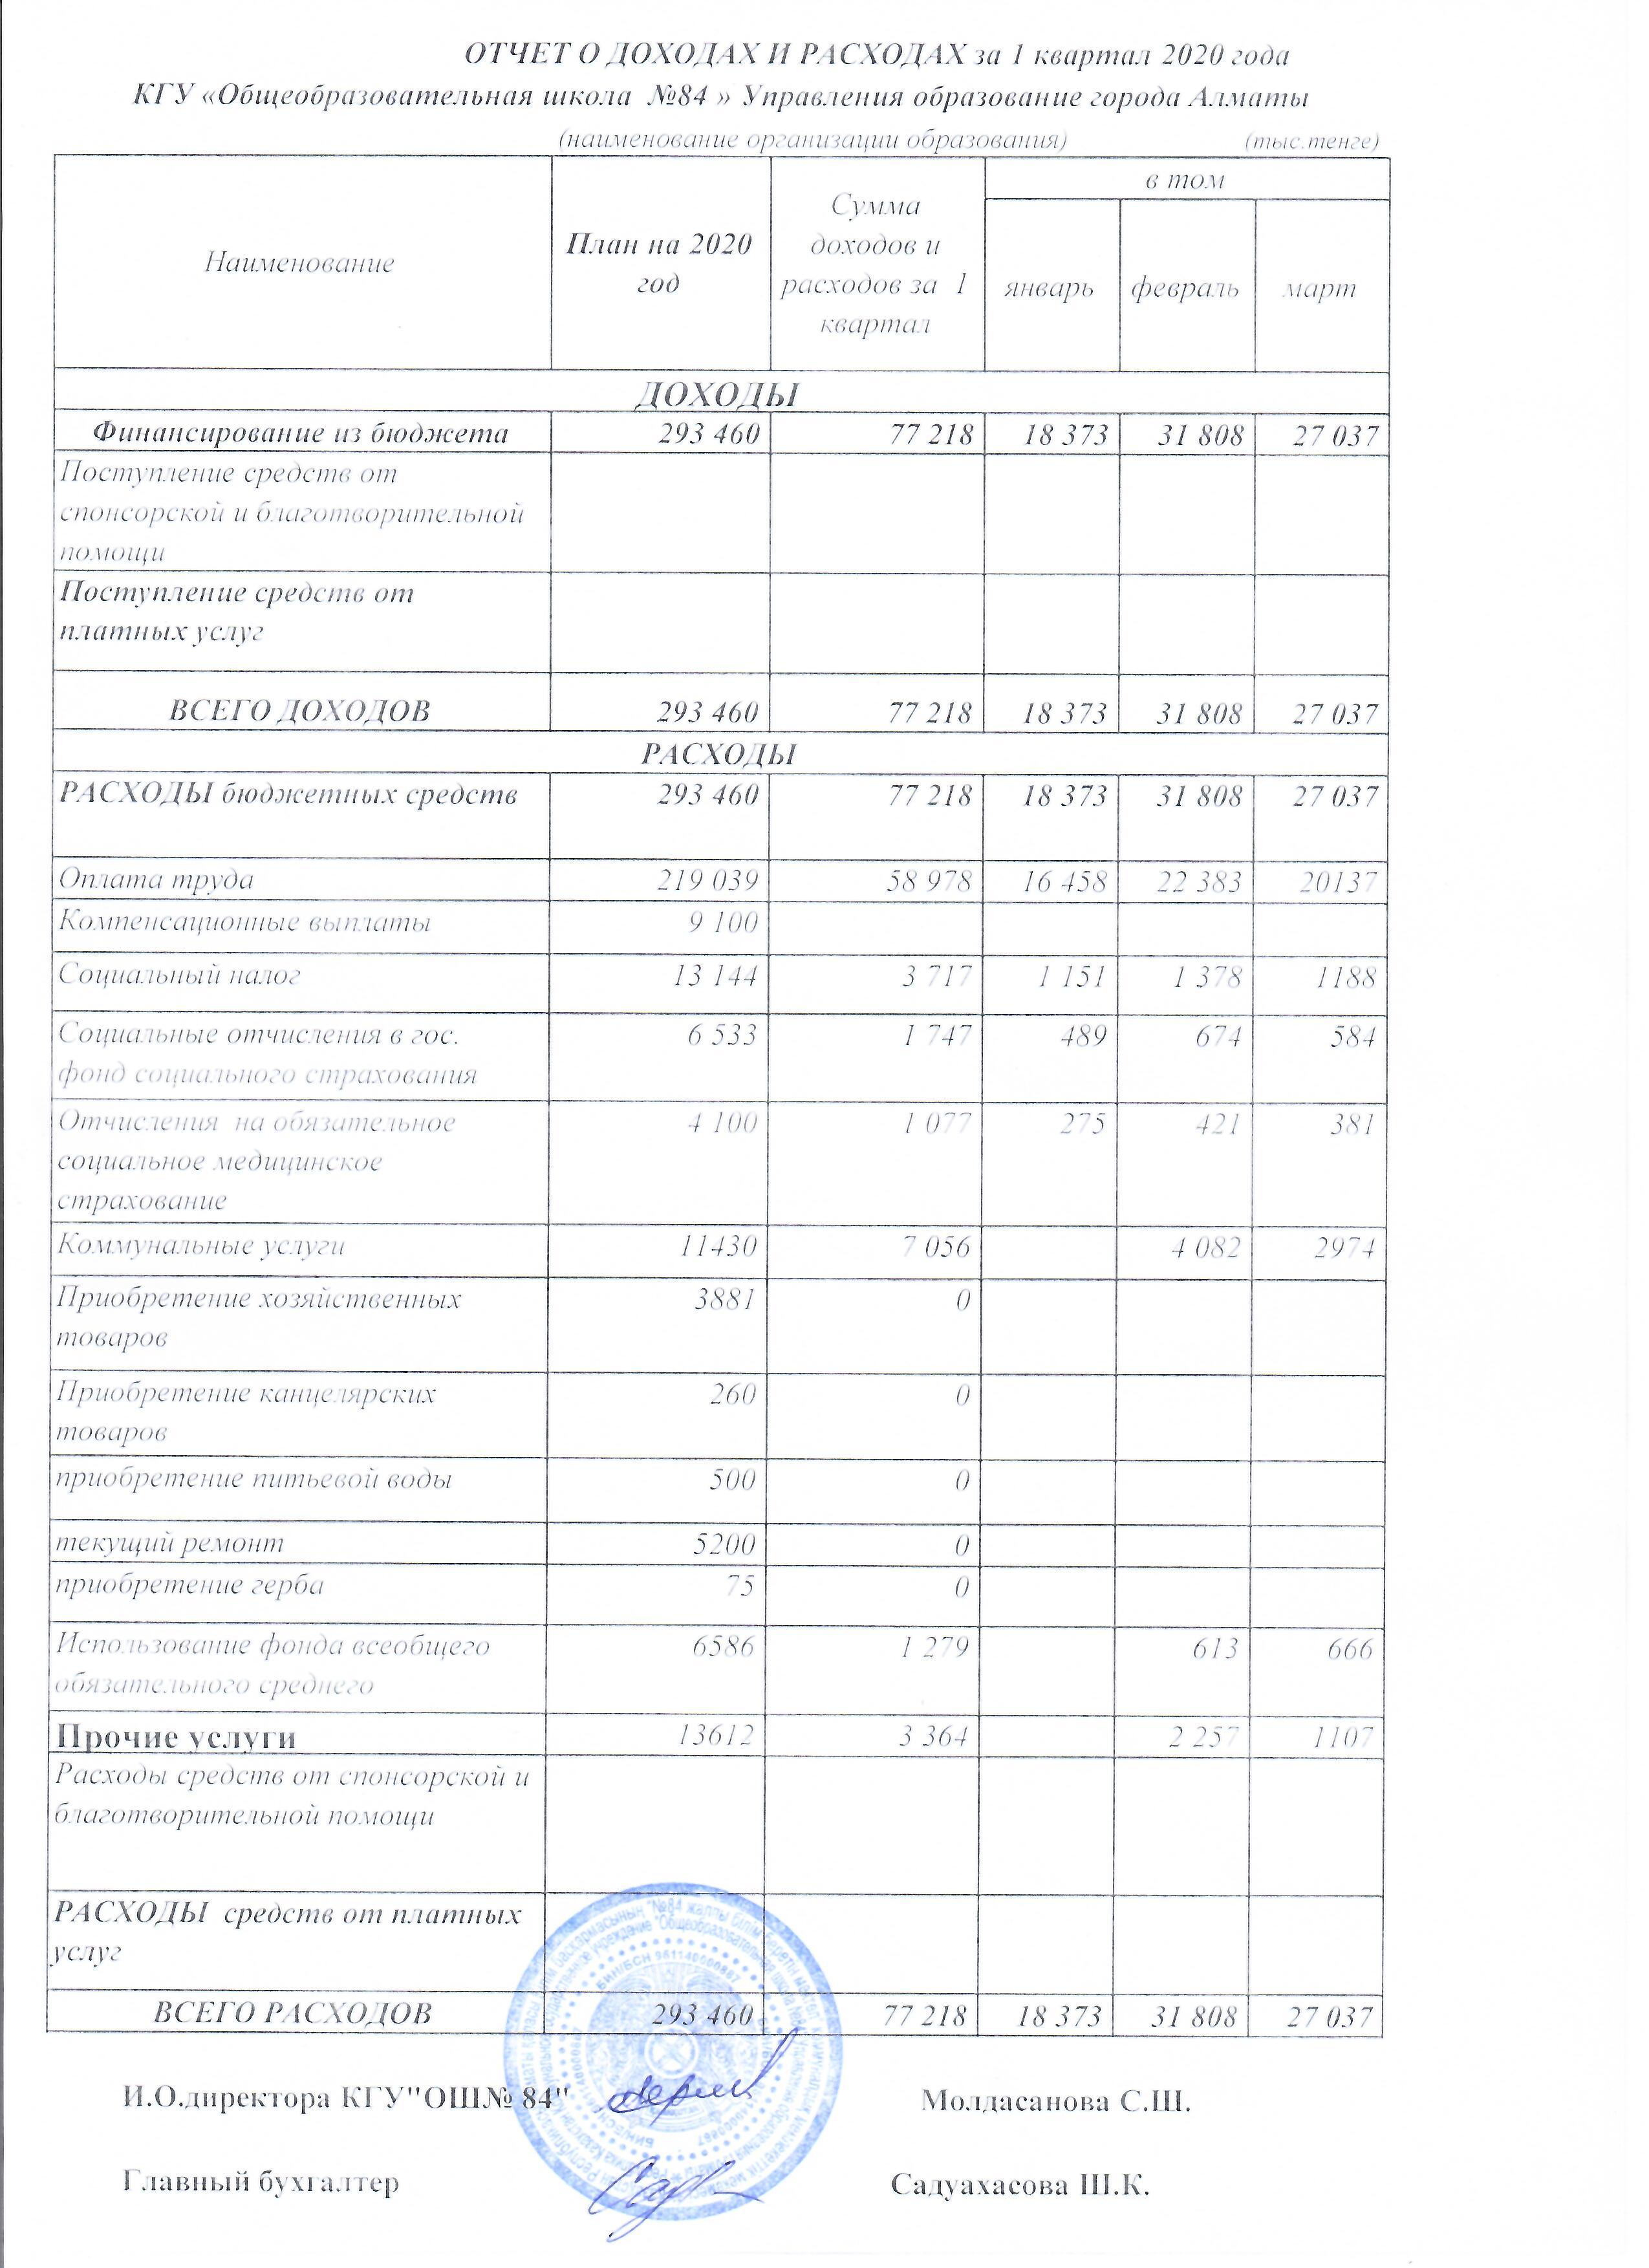 Отчет о доходах и расходах за 1 квартал 2020 года КГУ ОШ №84